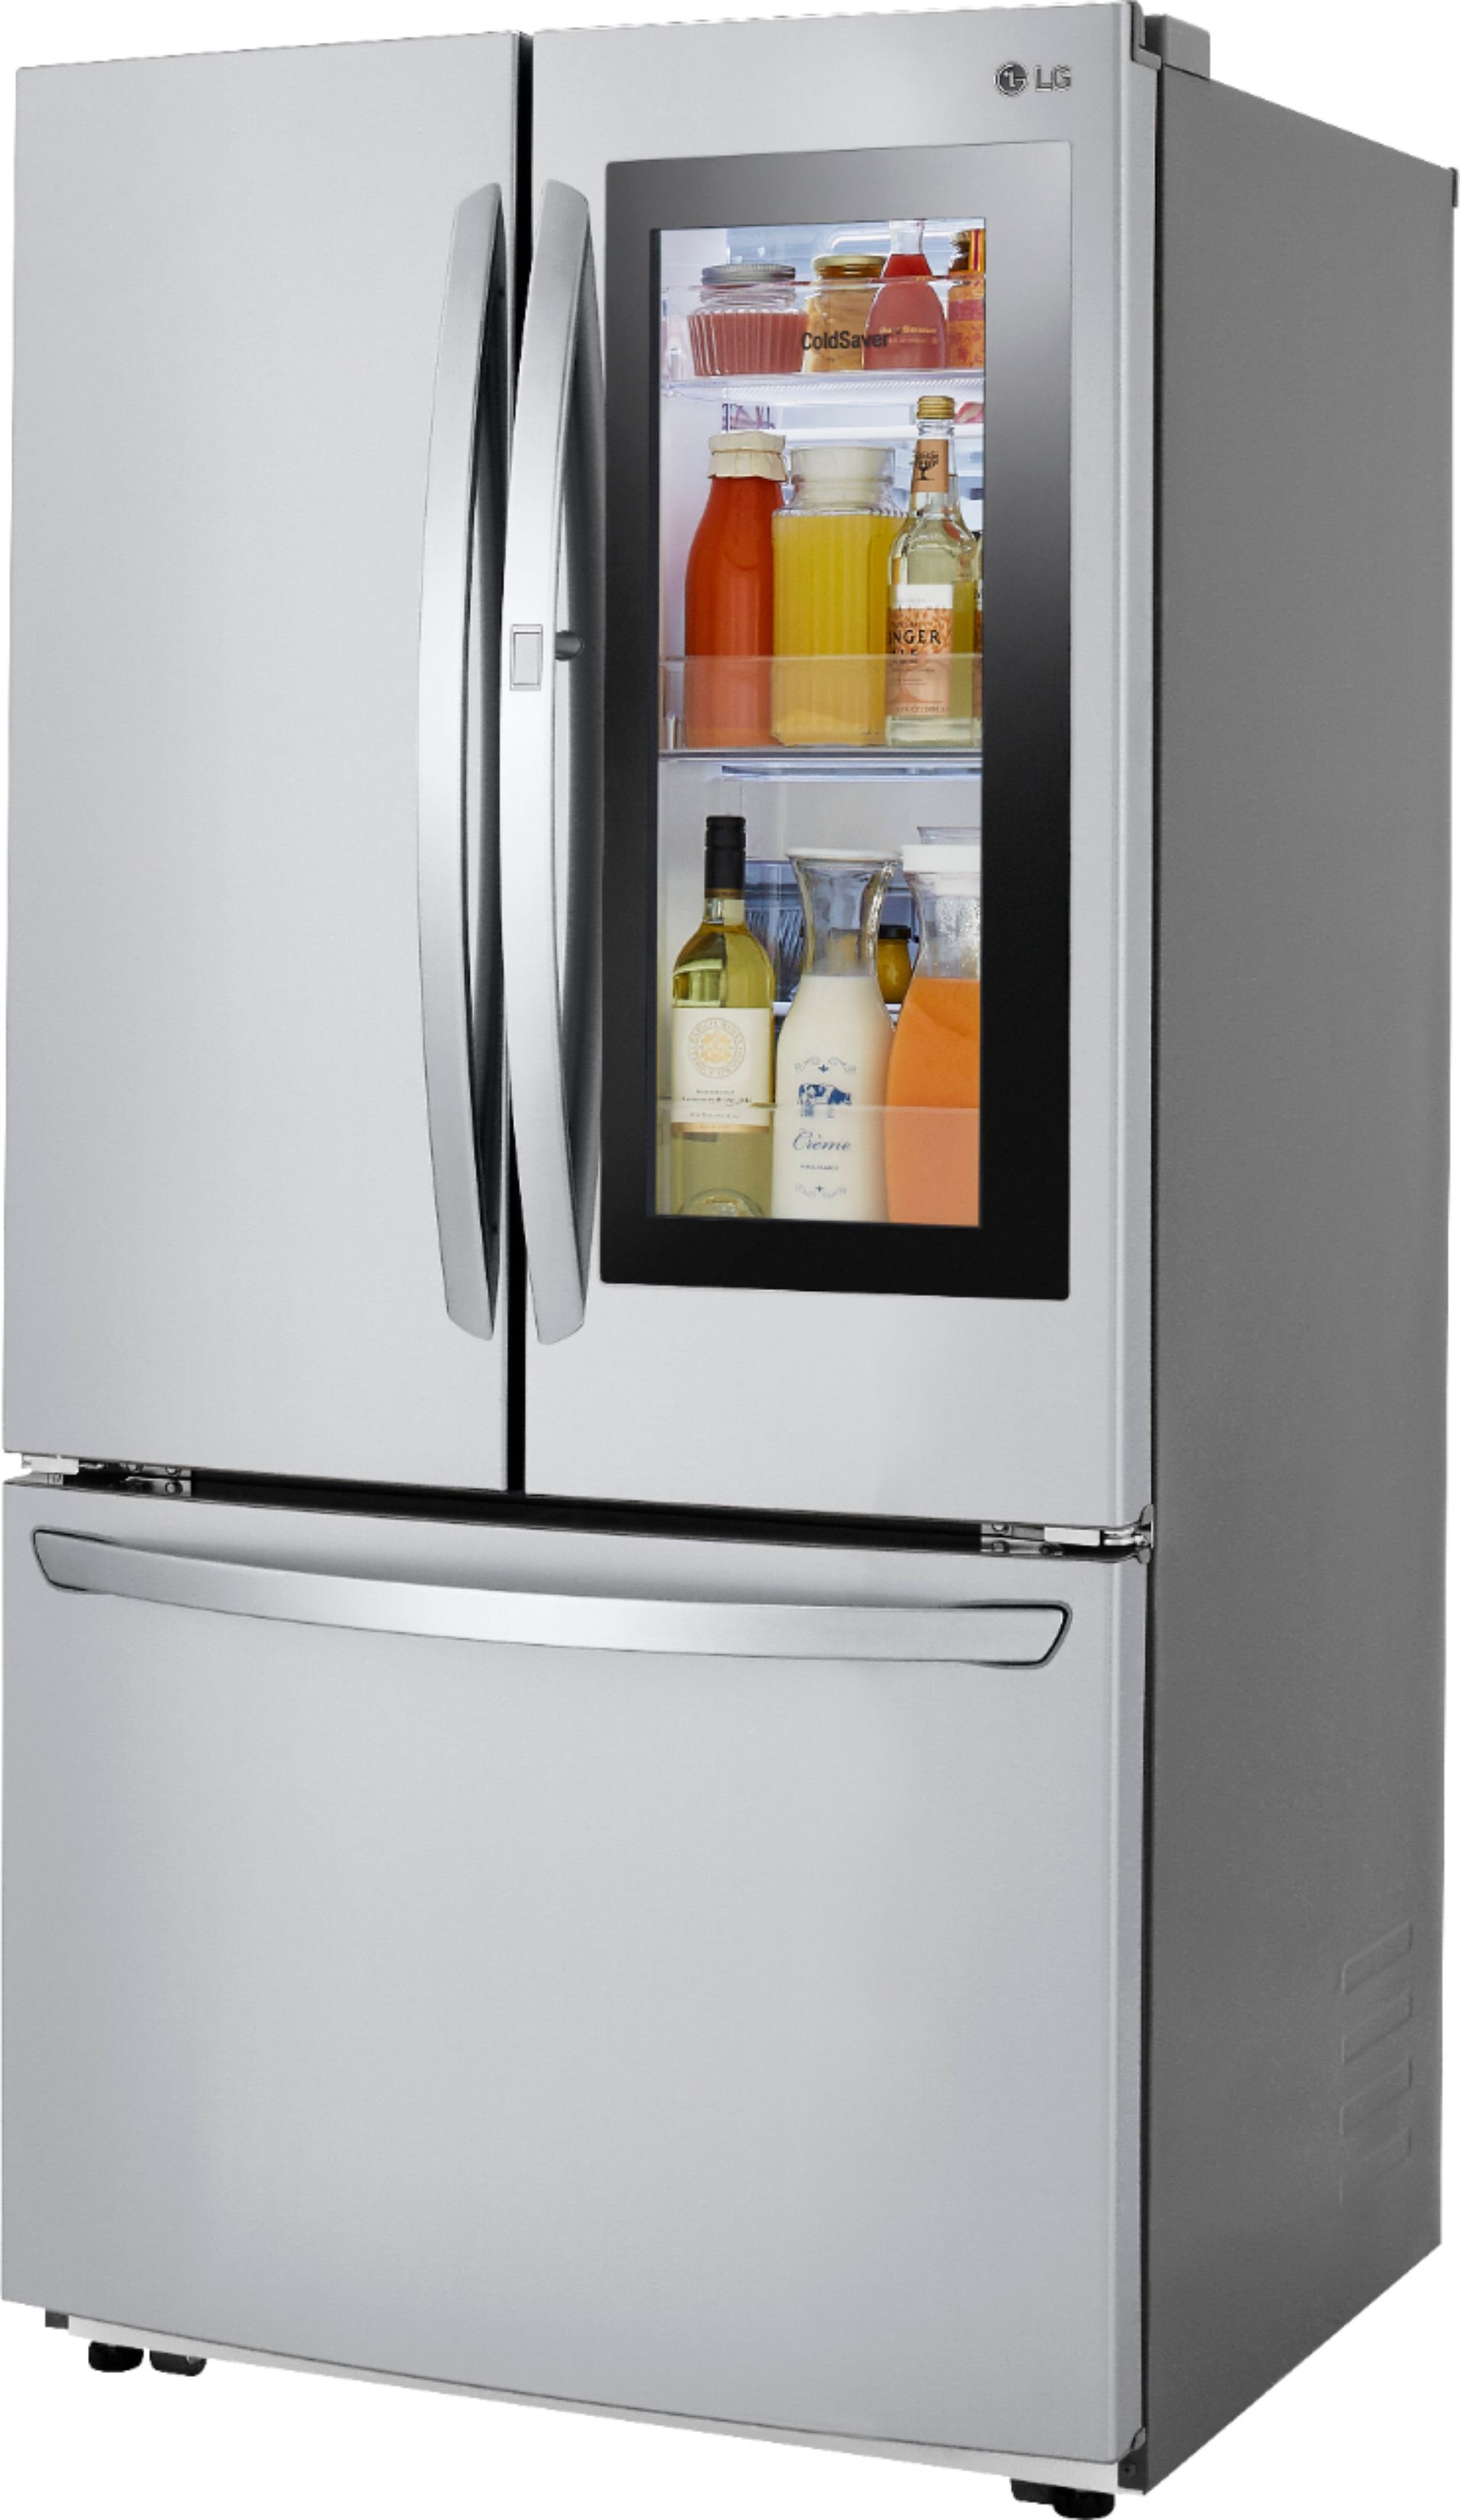 Left View: LG - 27 Cu. Ft. InstaView French Door-in-Door Refrigerator with Ice Maker - Stainless steel